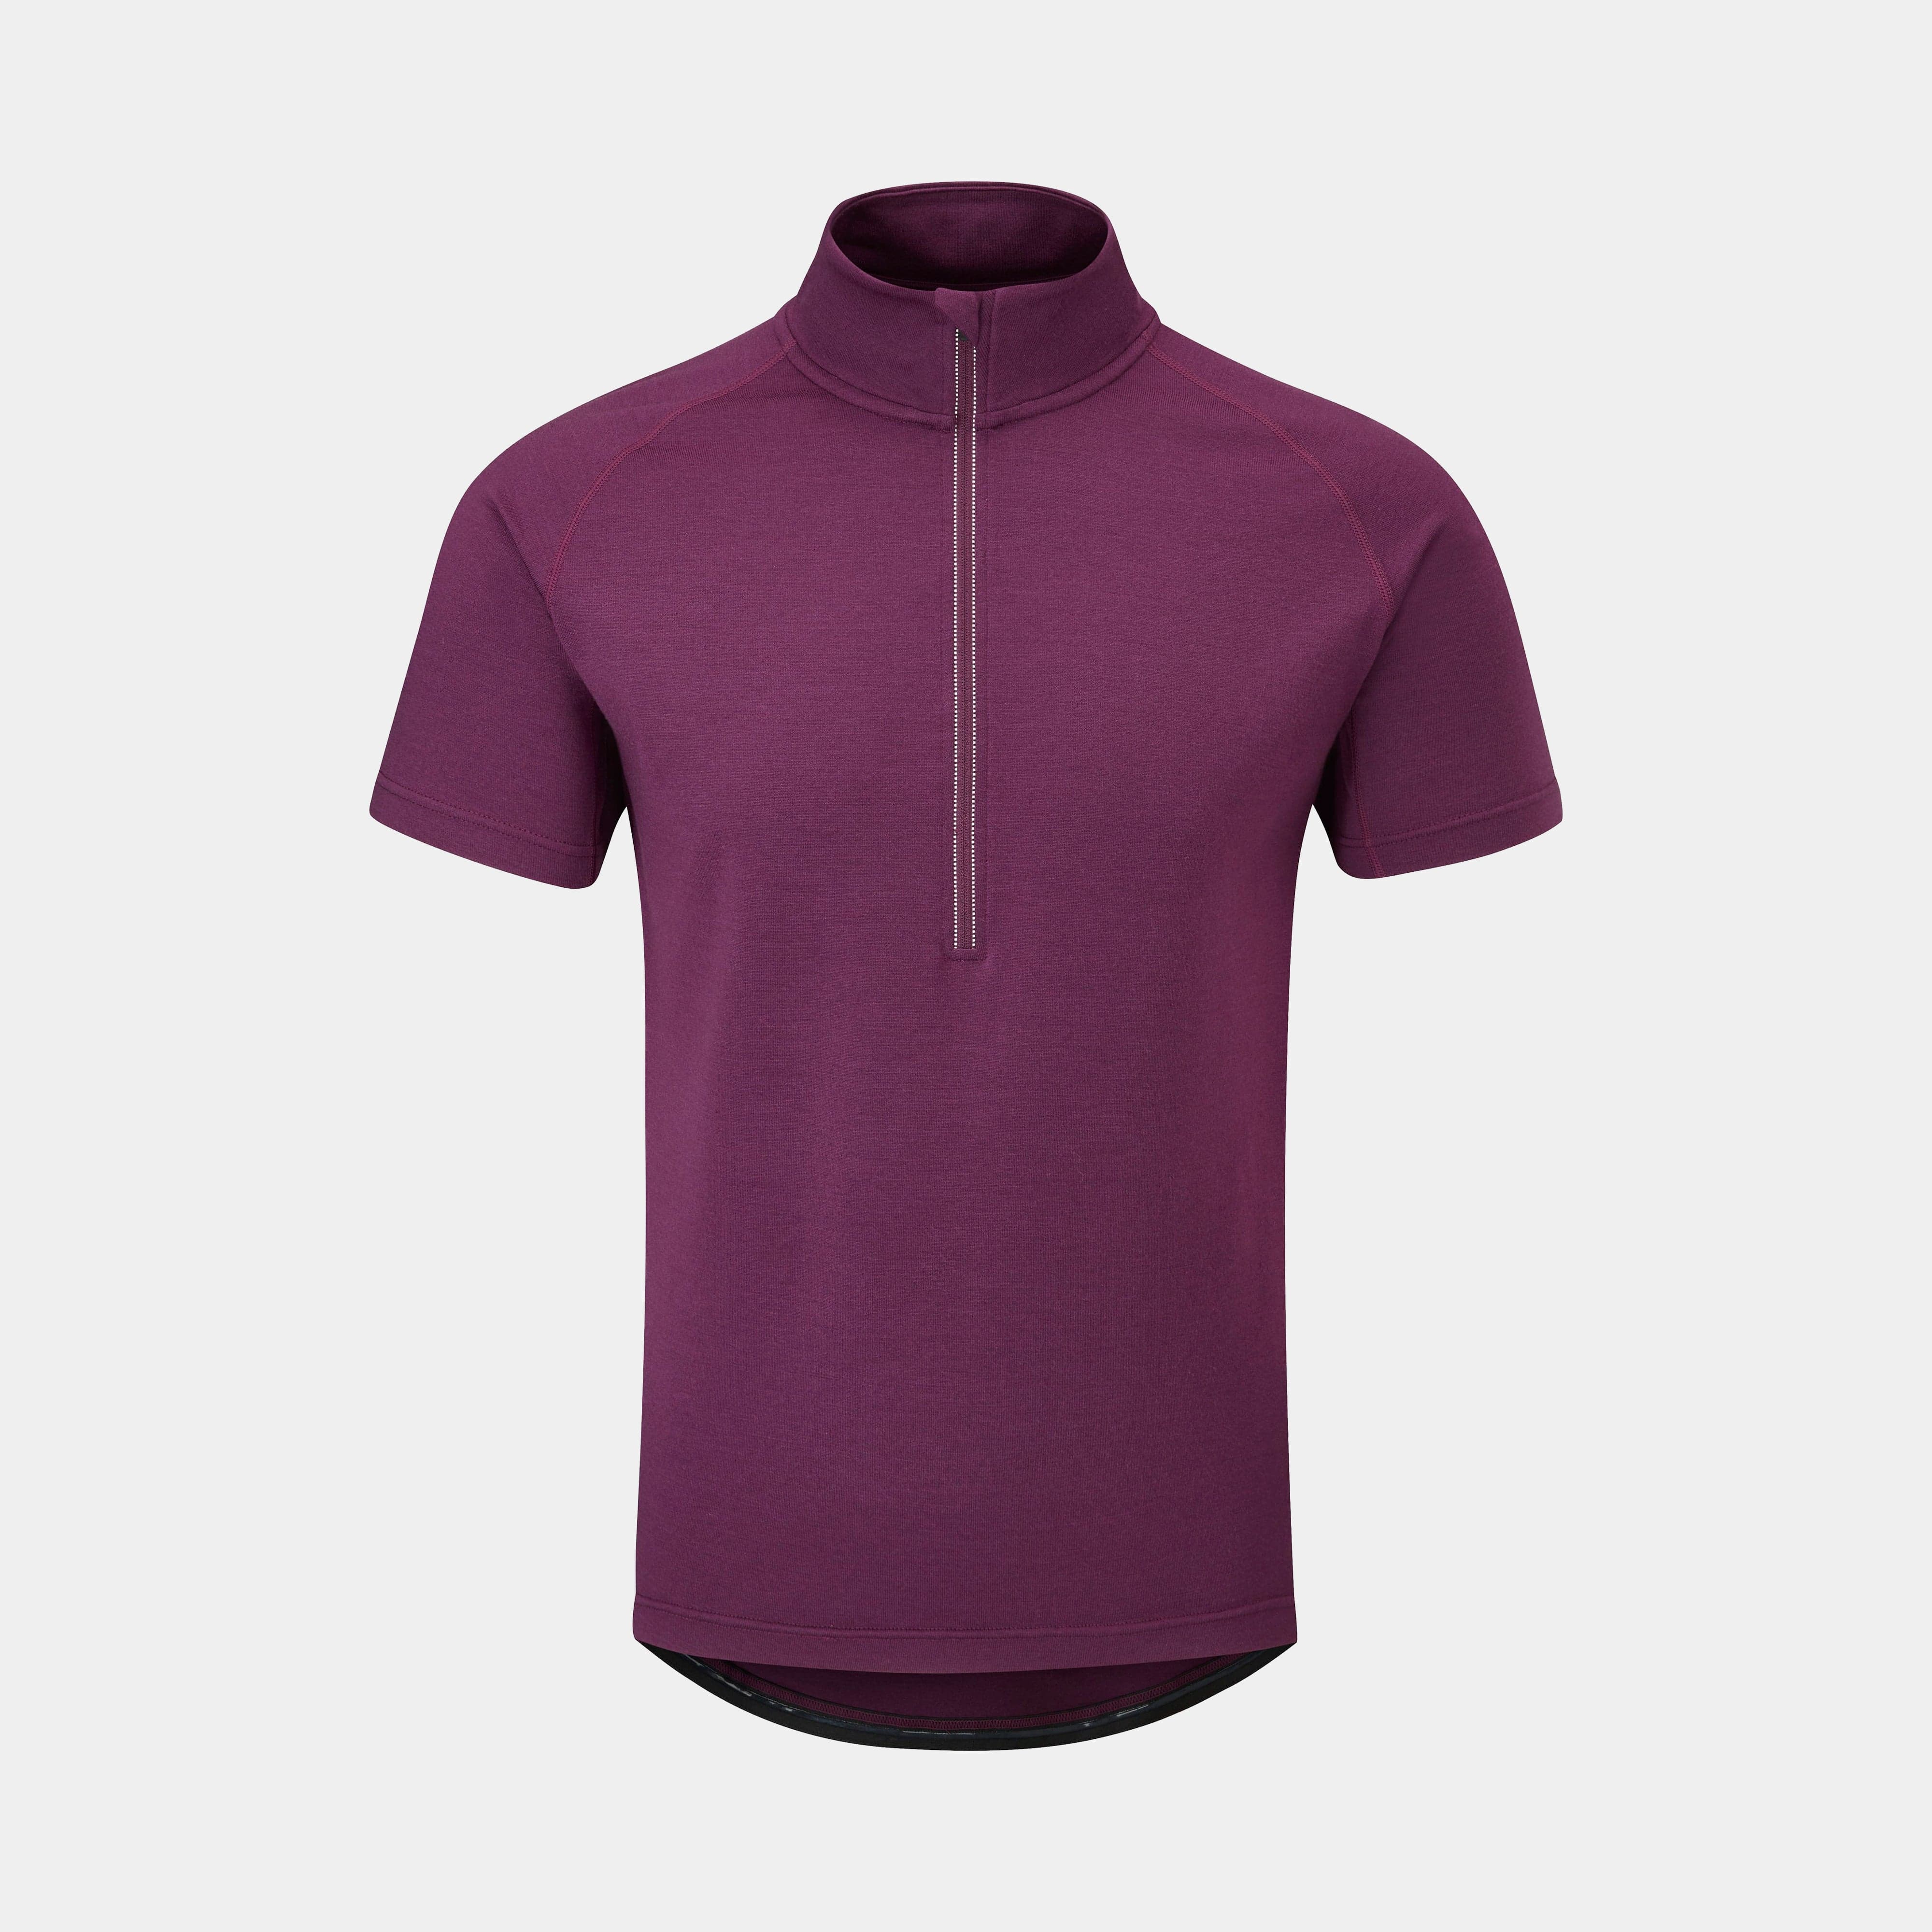 mens kepler velo short sleeve cycling jersey in purple